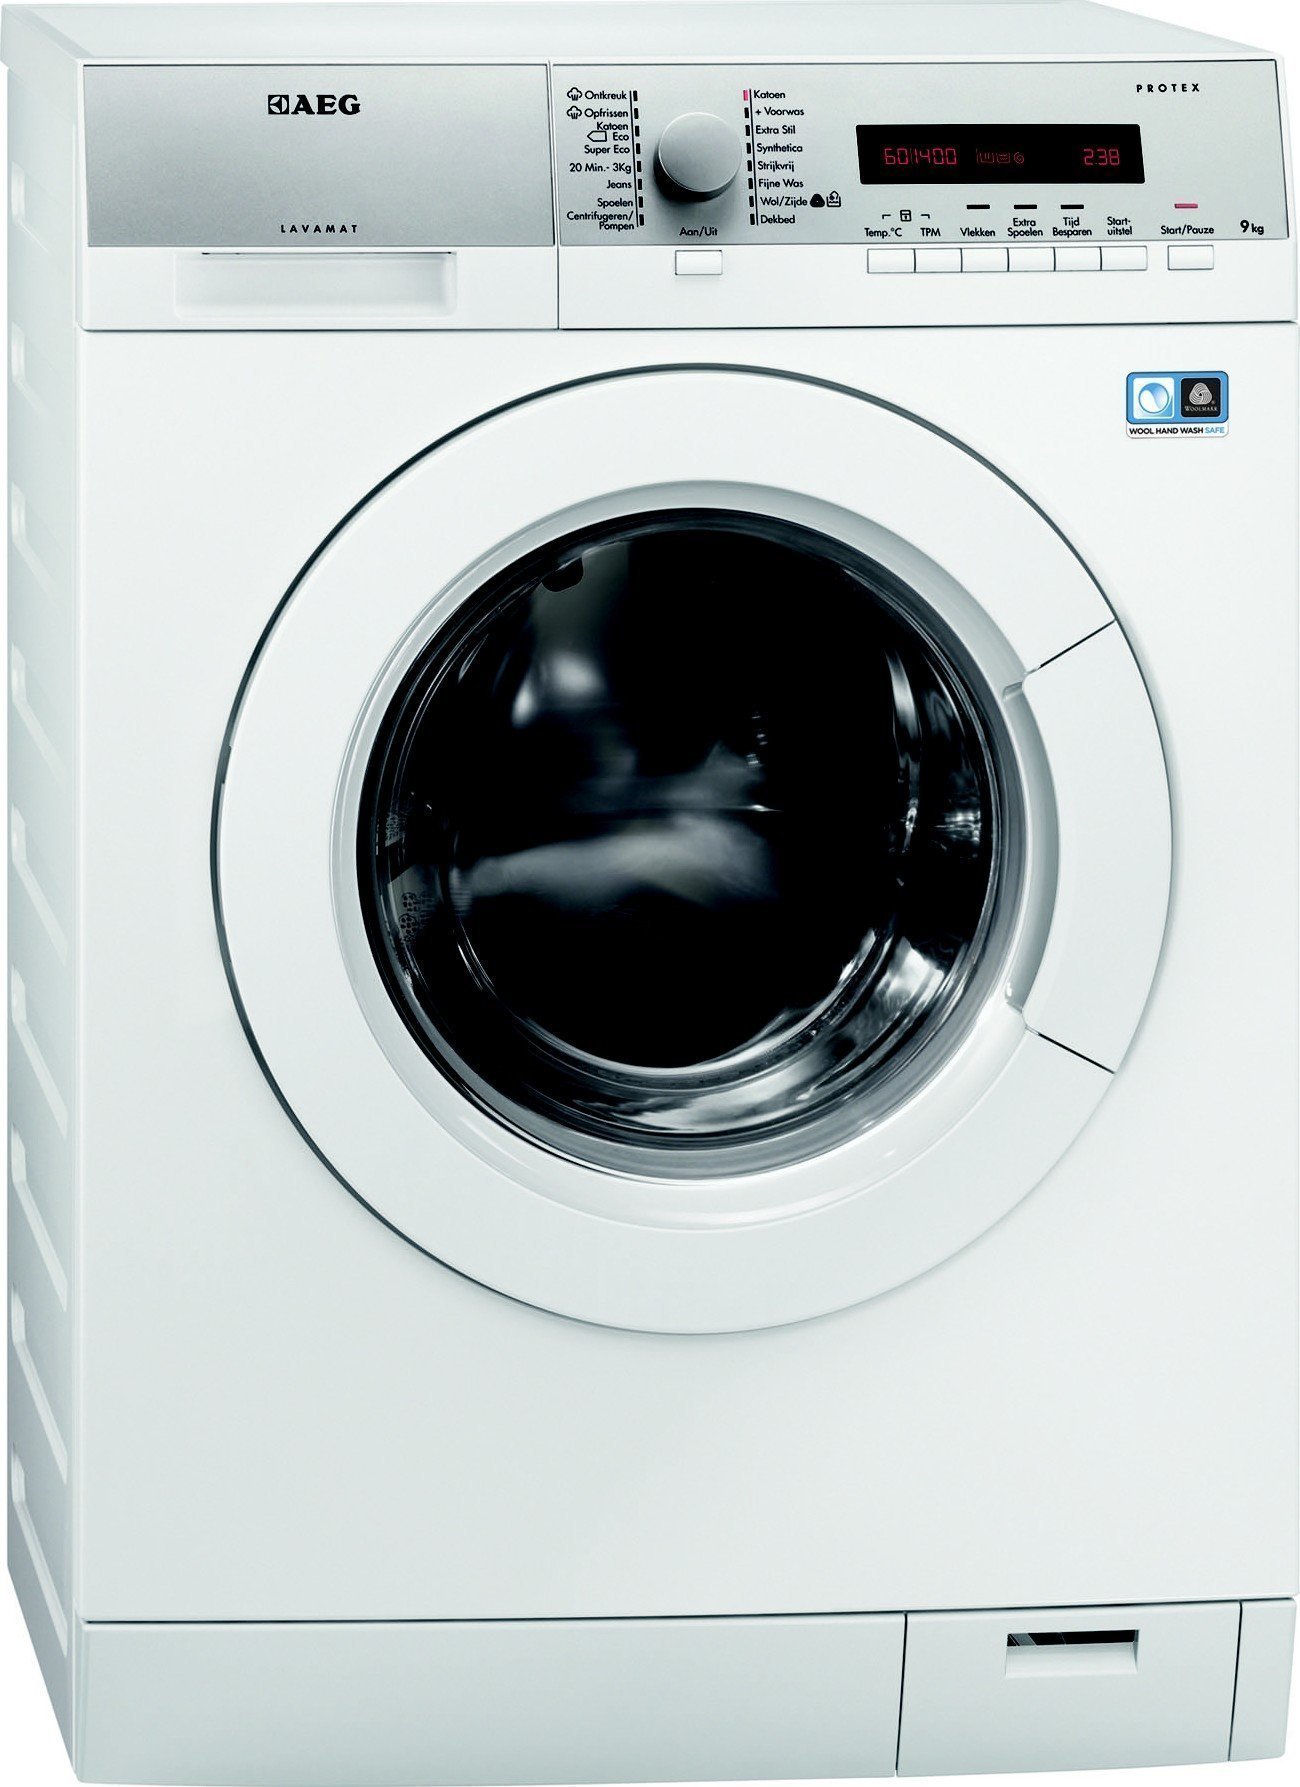 L76695NFL wasmachine, 9 en 1600 toeren